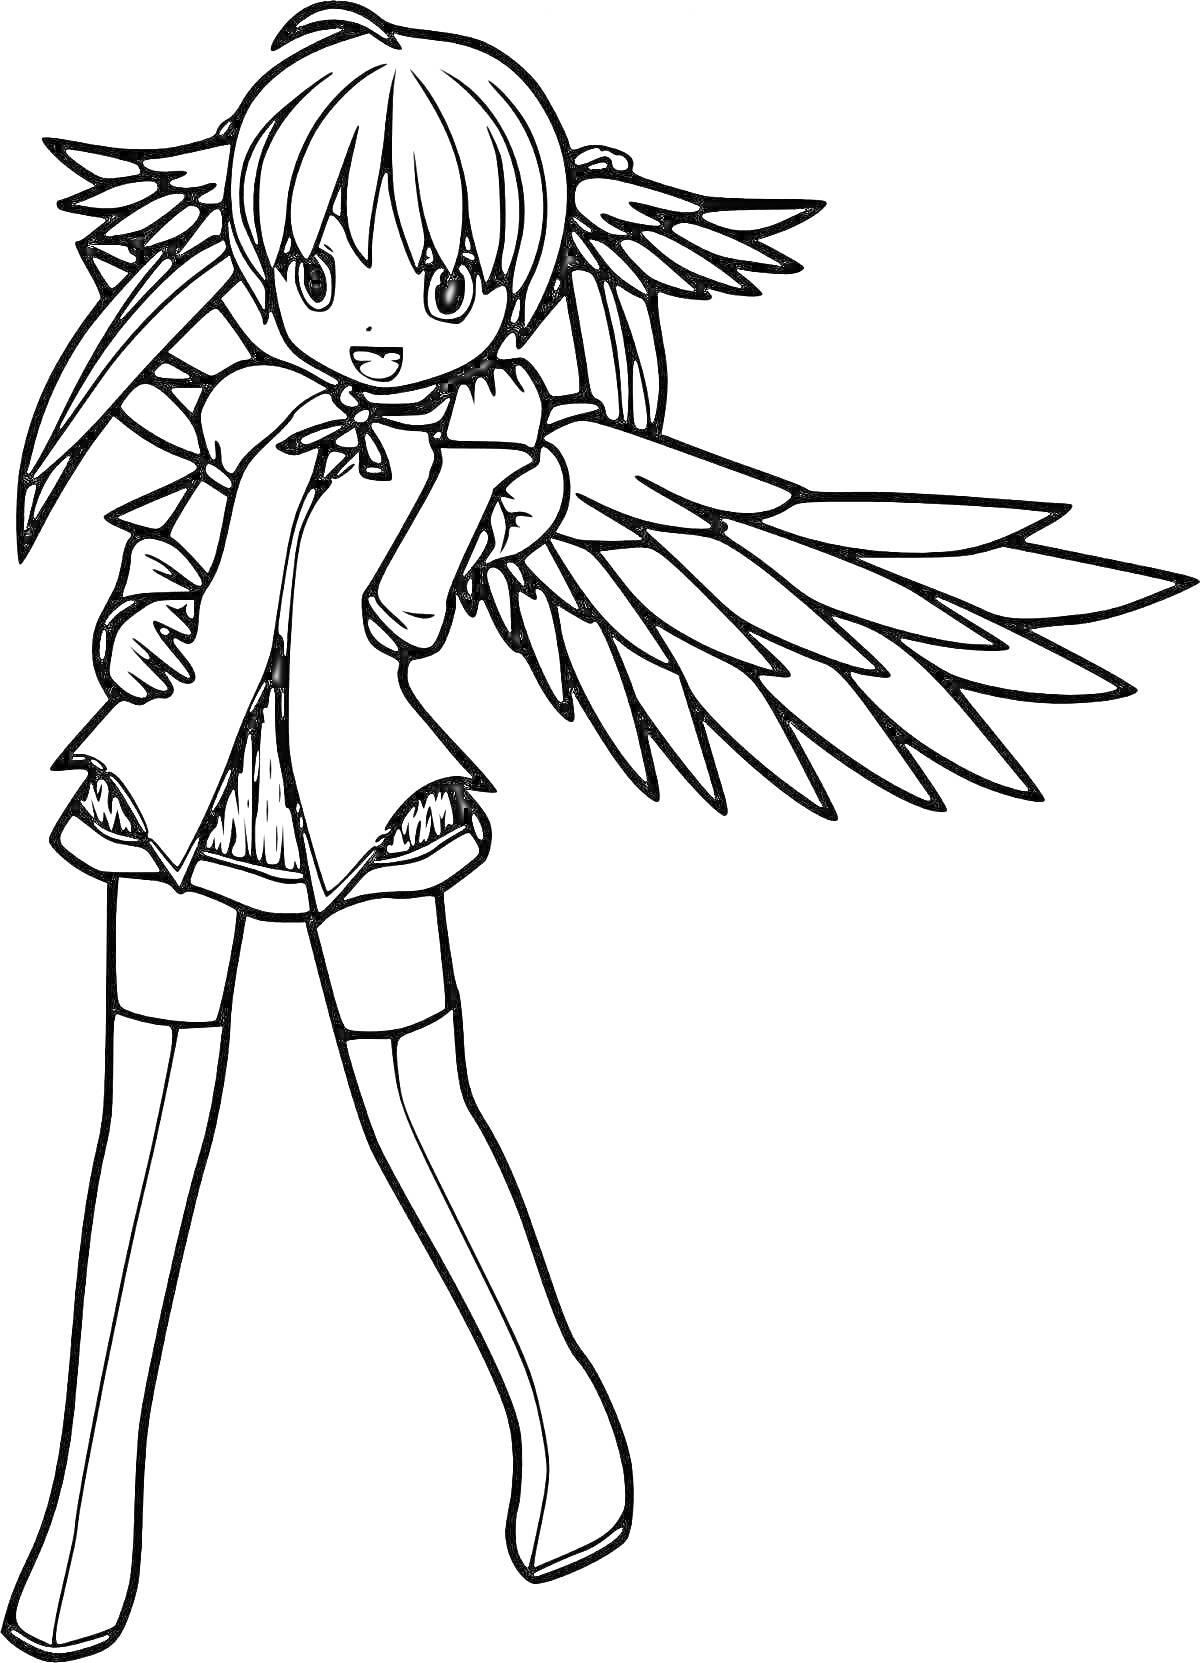 Раскраска Аниме ангел: девочка с крыльями, короткие волосы, наряд со штанами и сапогами